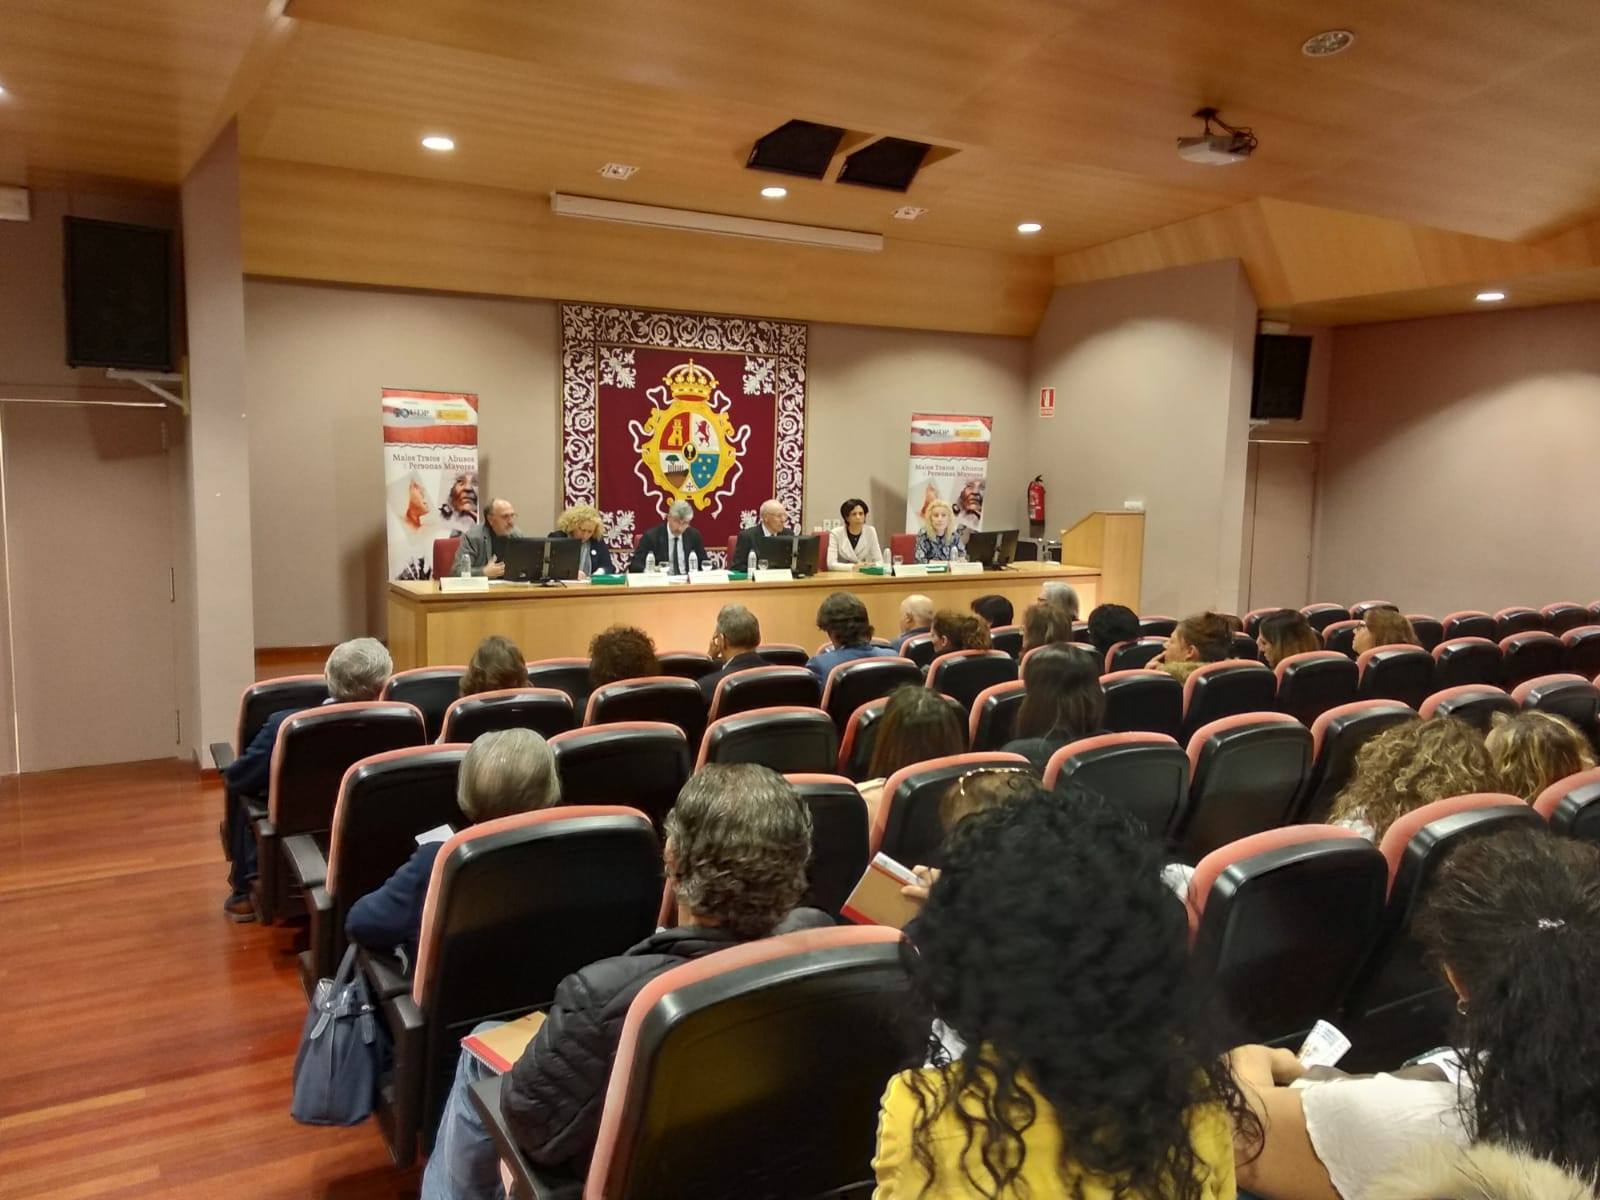 La Escuela Universitaria de Enfermería de Lugo, acoge la XLII Jornada sobre “Prevención Malos Tratos y abusos a Personas Mayores”